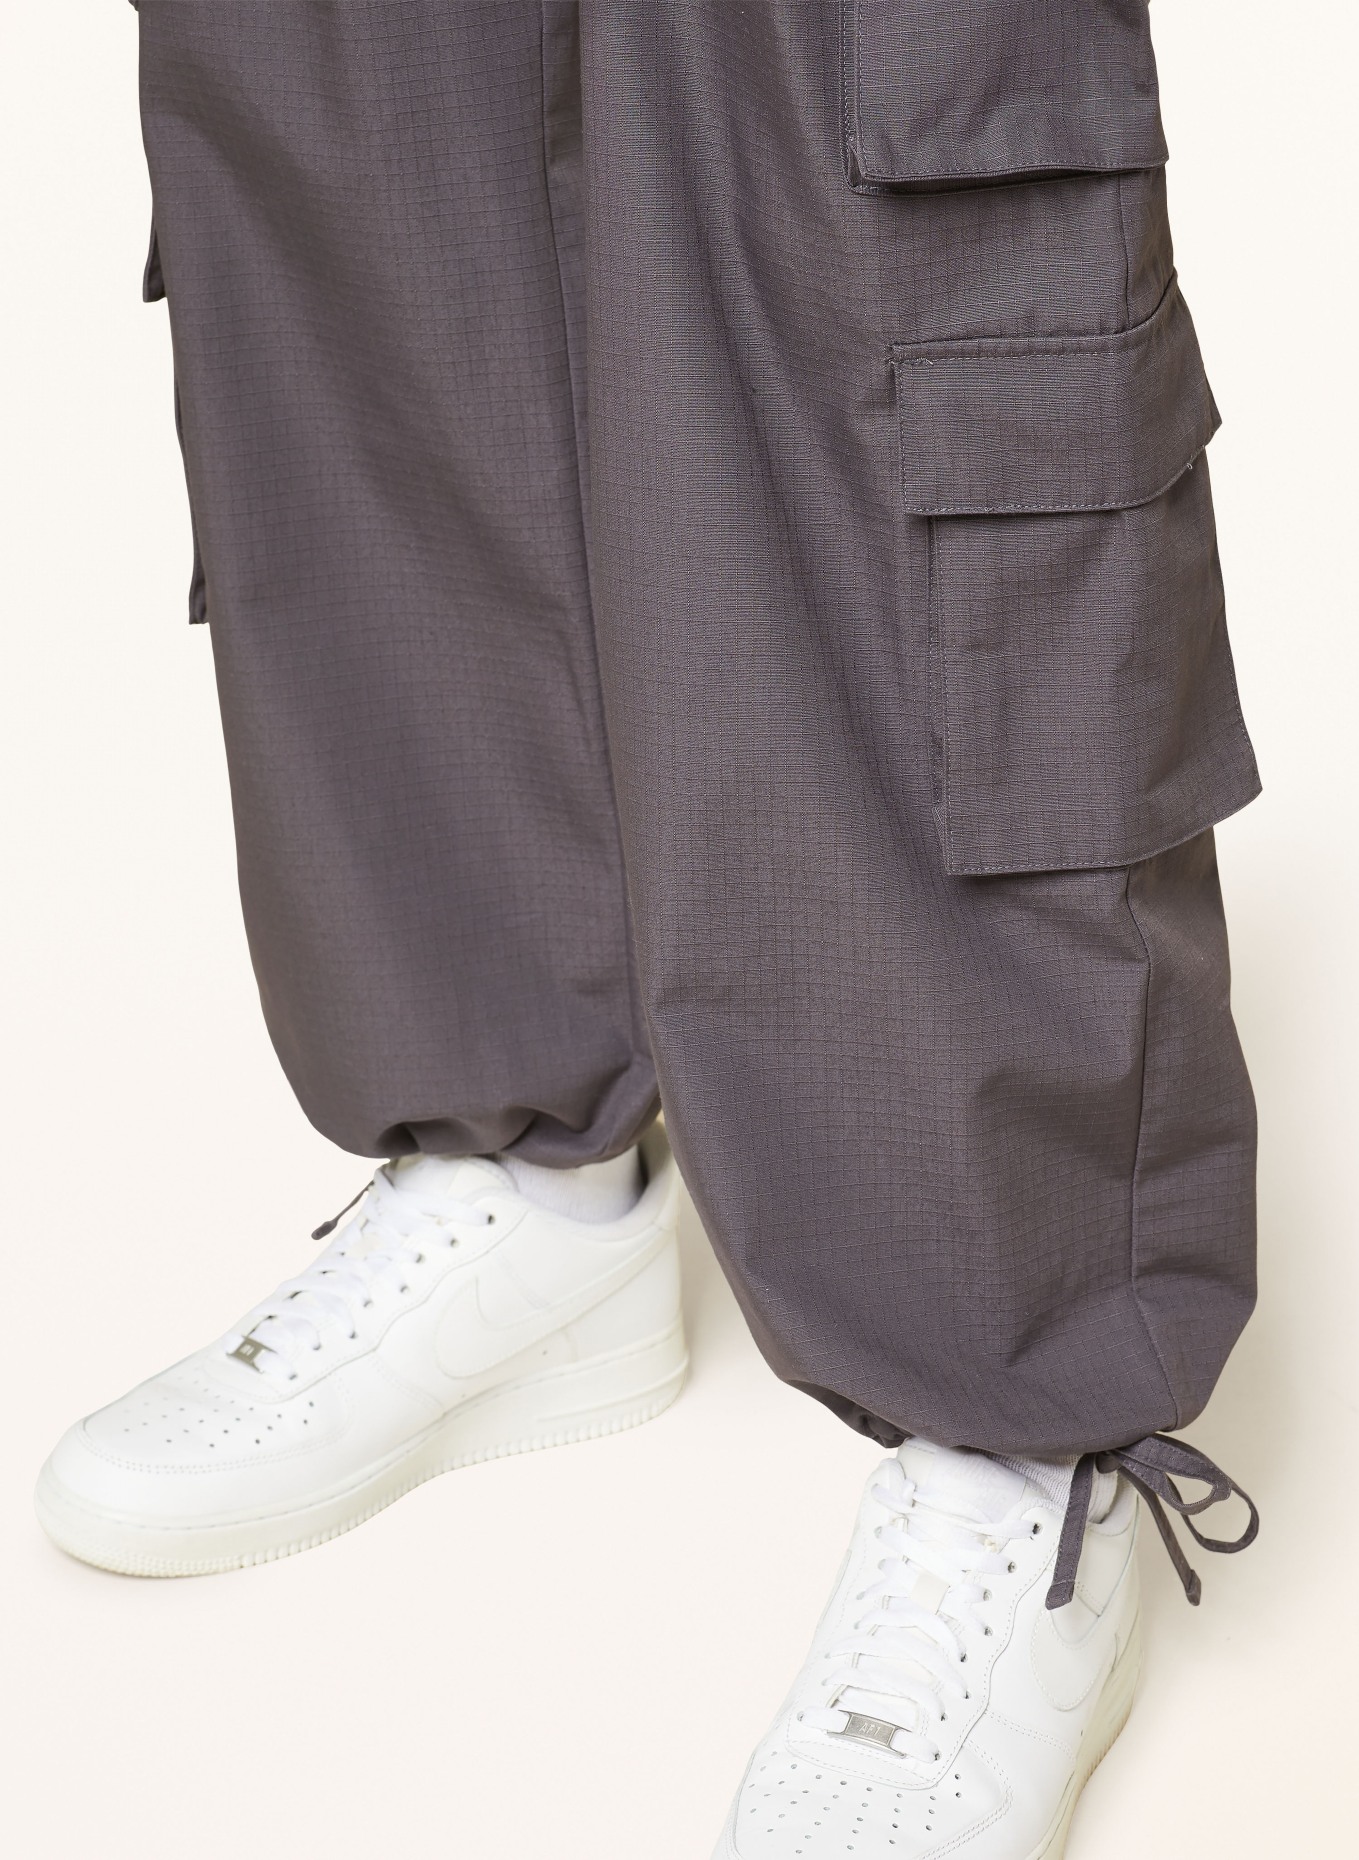 PEQUS Cargo pants, Color: DARK GRAY (Image 7)